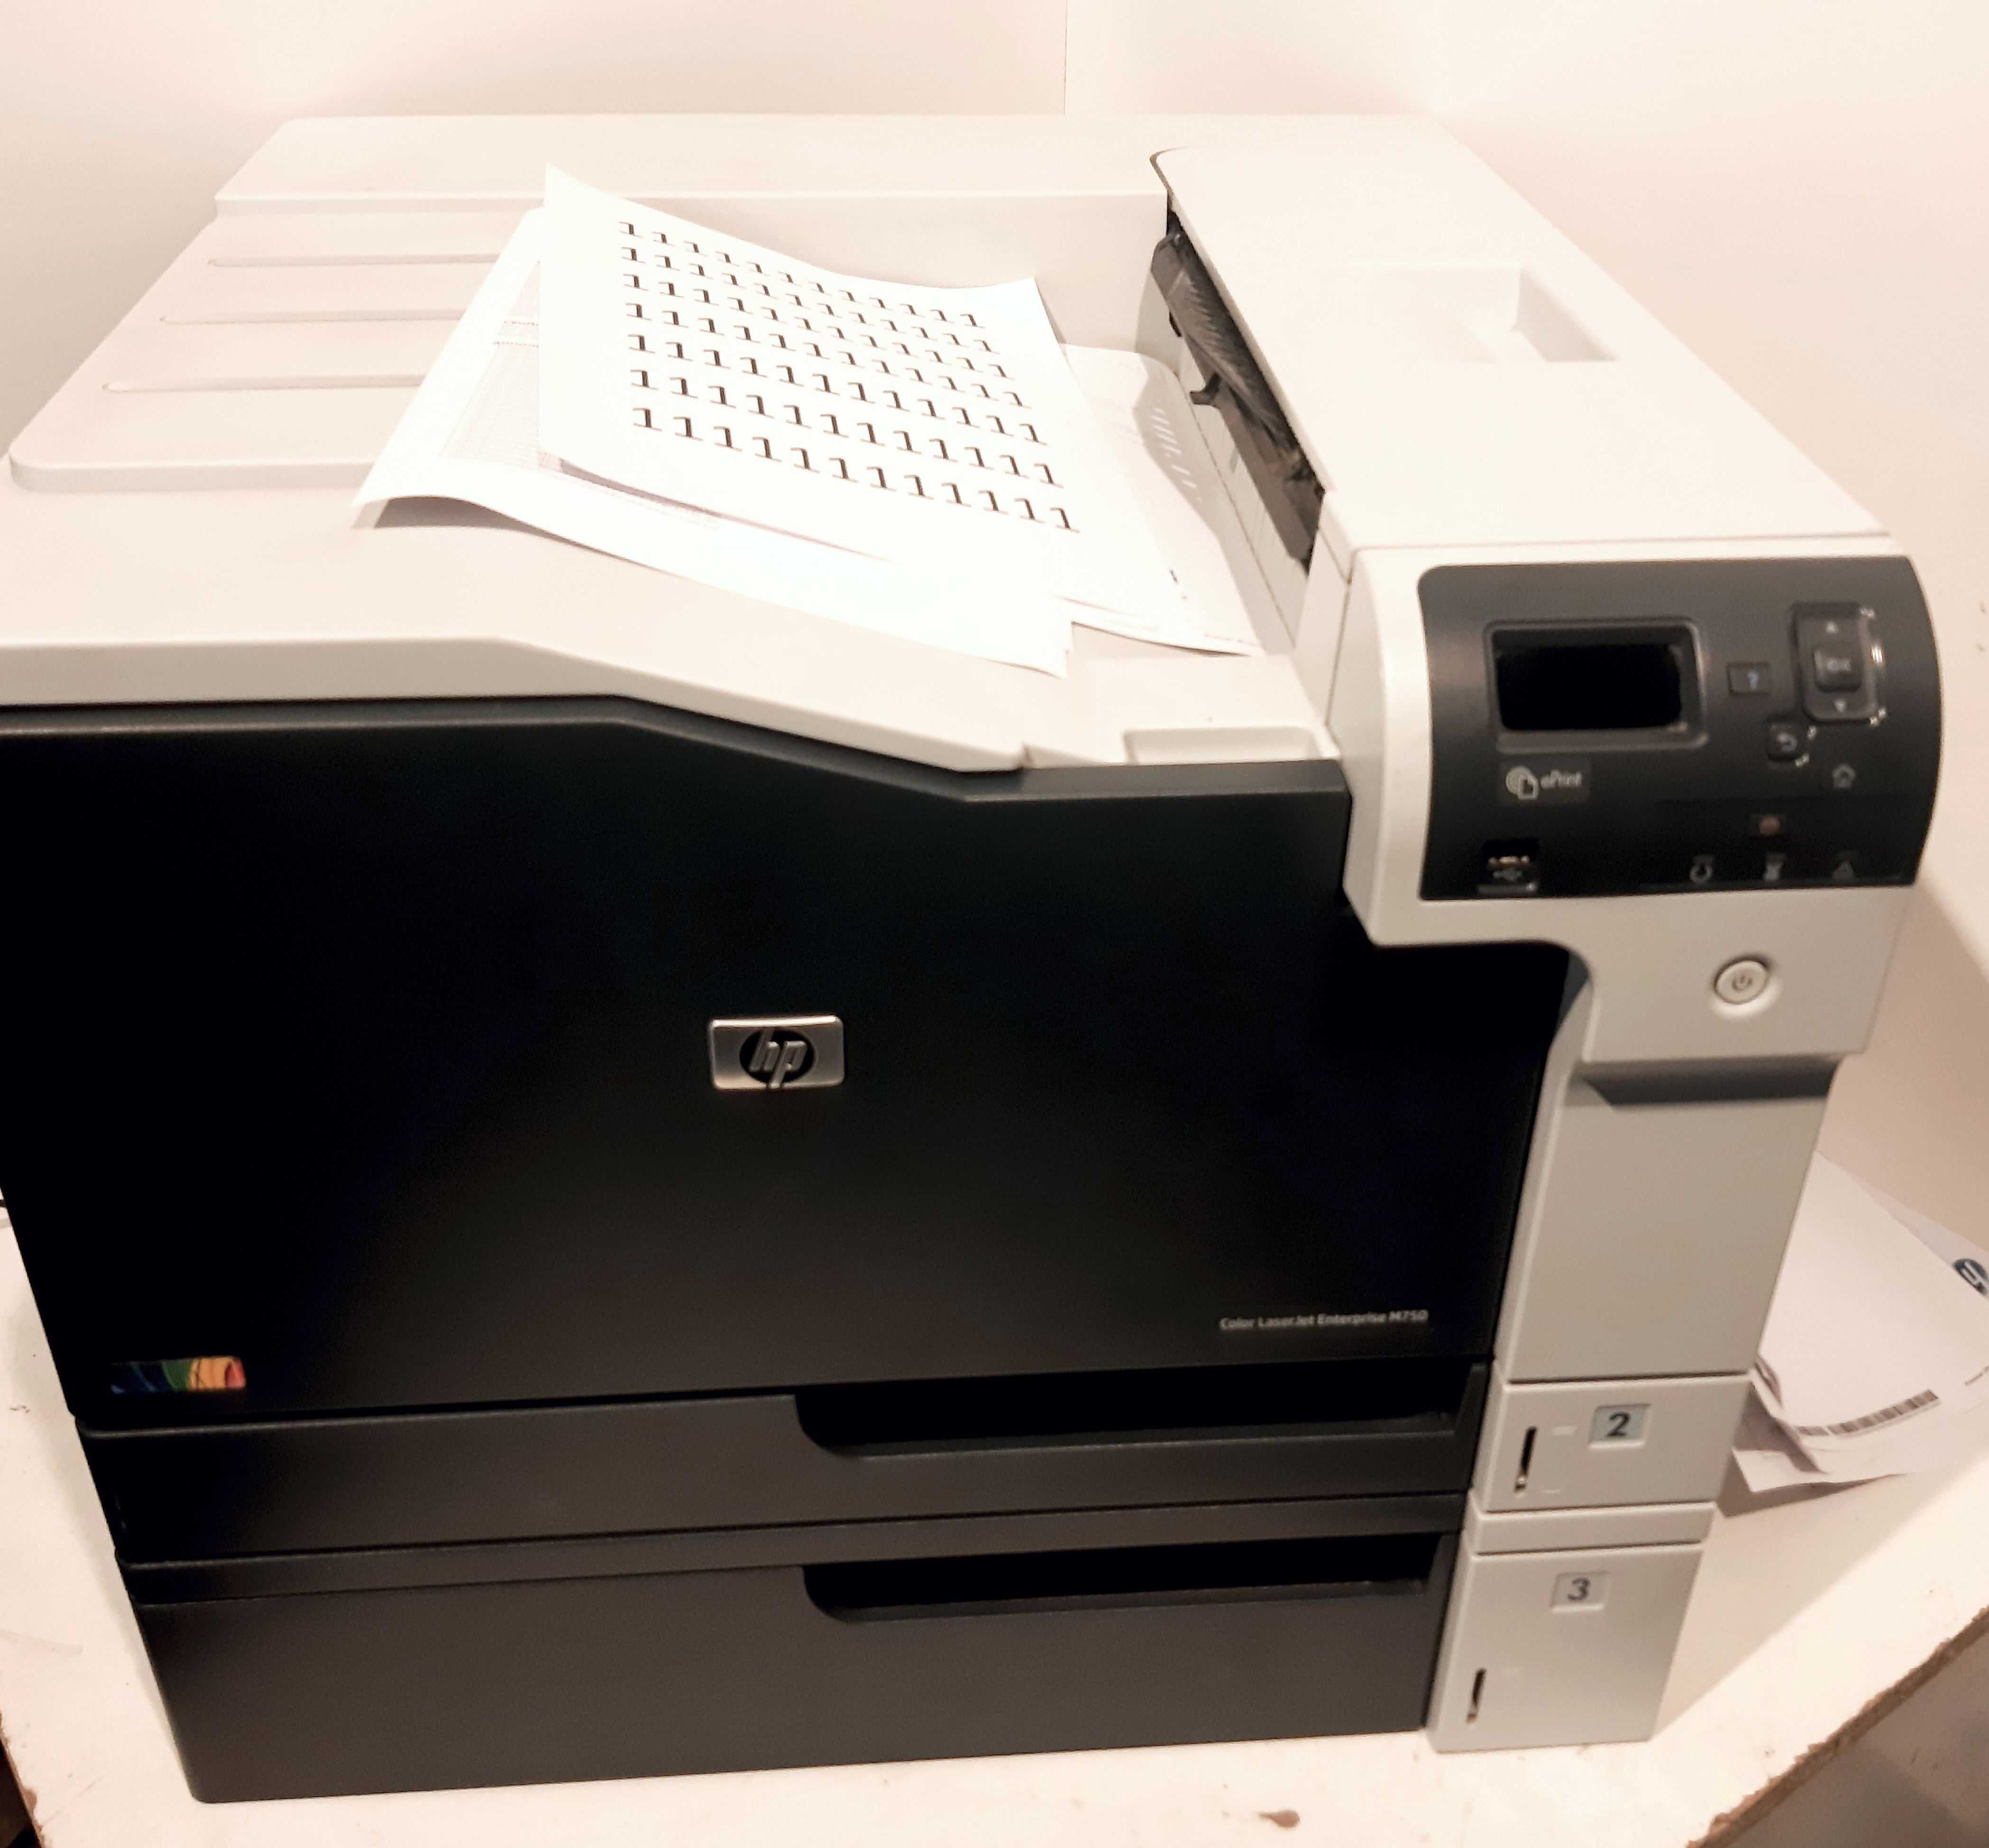 Принтер лазерный HP Color LaserJet Enterprise M750dn, цветн., A3